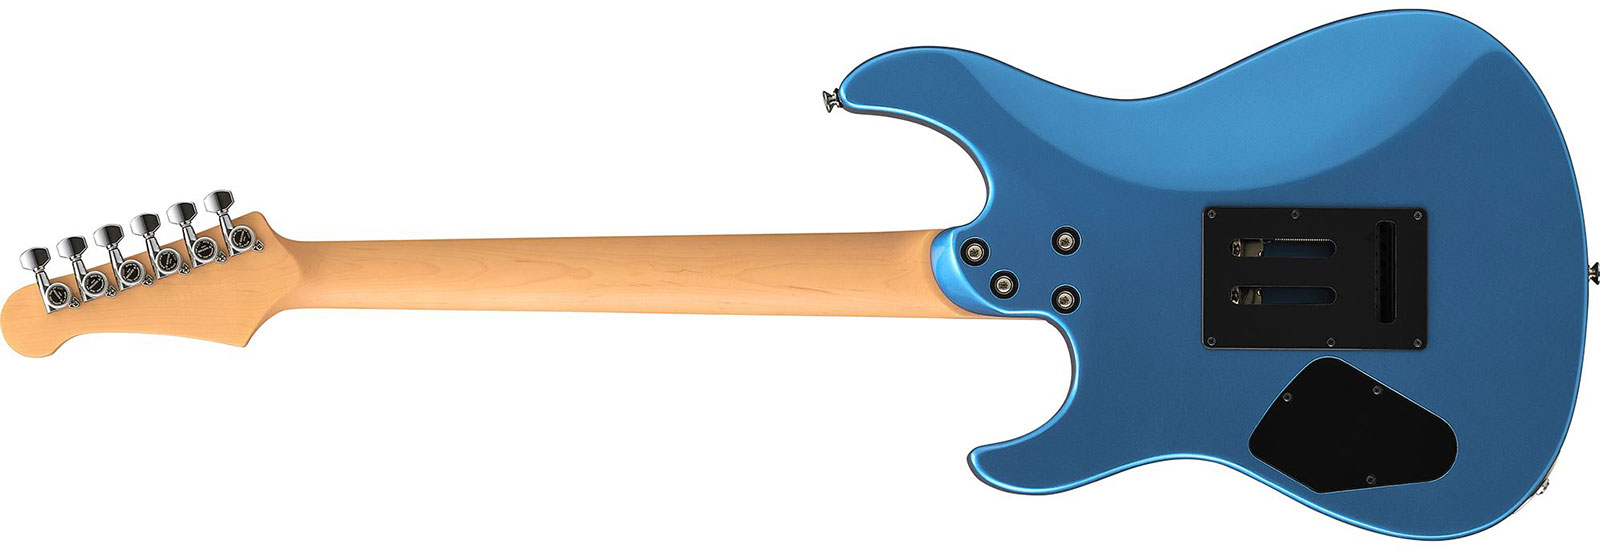 Yamaha Pacifica Standard Plus Pacs+12 Trem Hss Rw - Sparkle Blue - Guitarra eléctrica con forma de str. - Variation 1